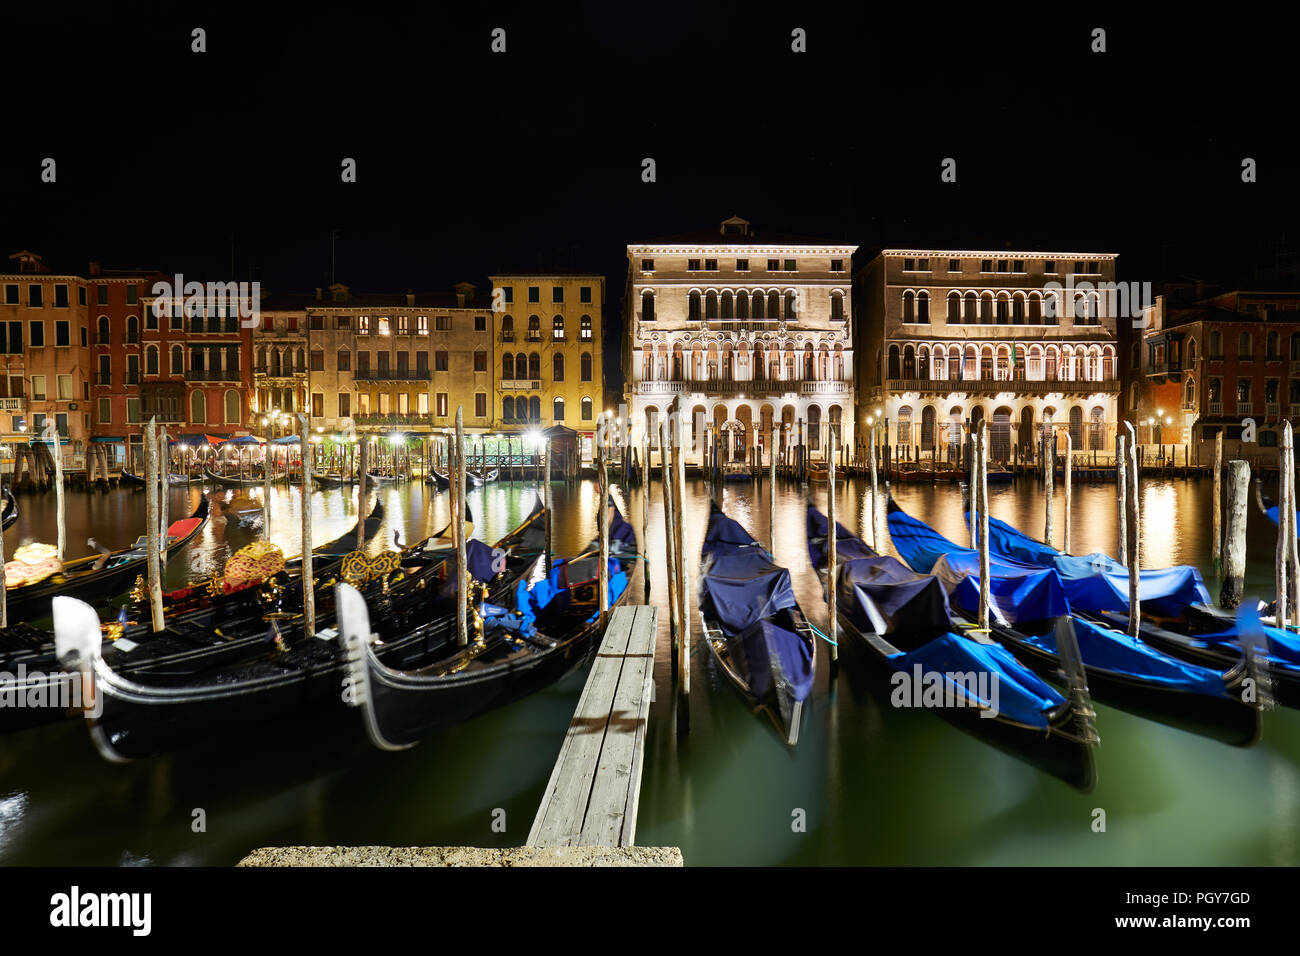 Grand Canal illuminated in Venice with gondolas at night, Italy Stock Photo